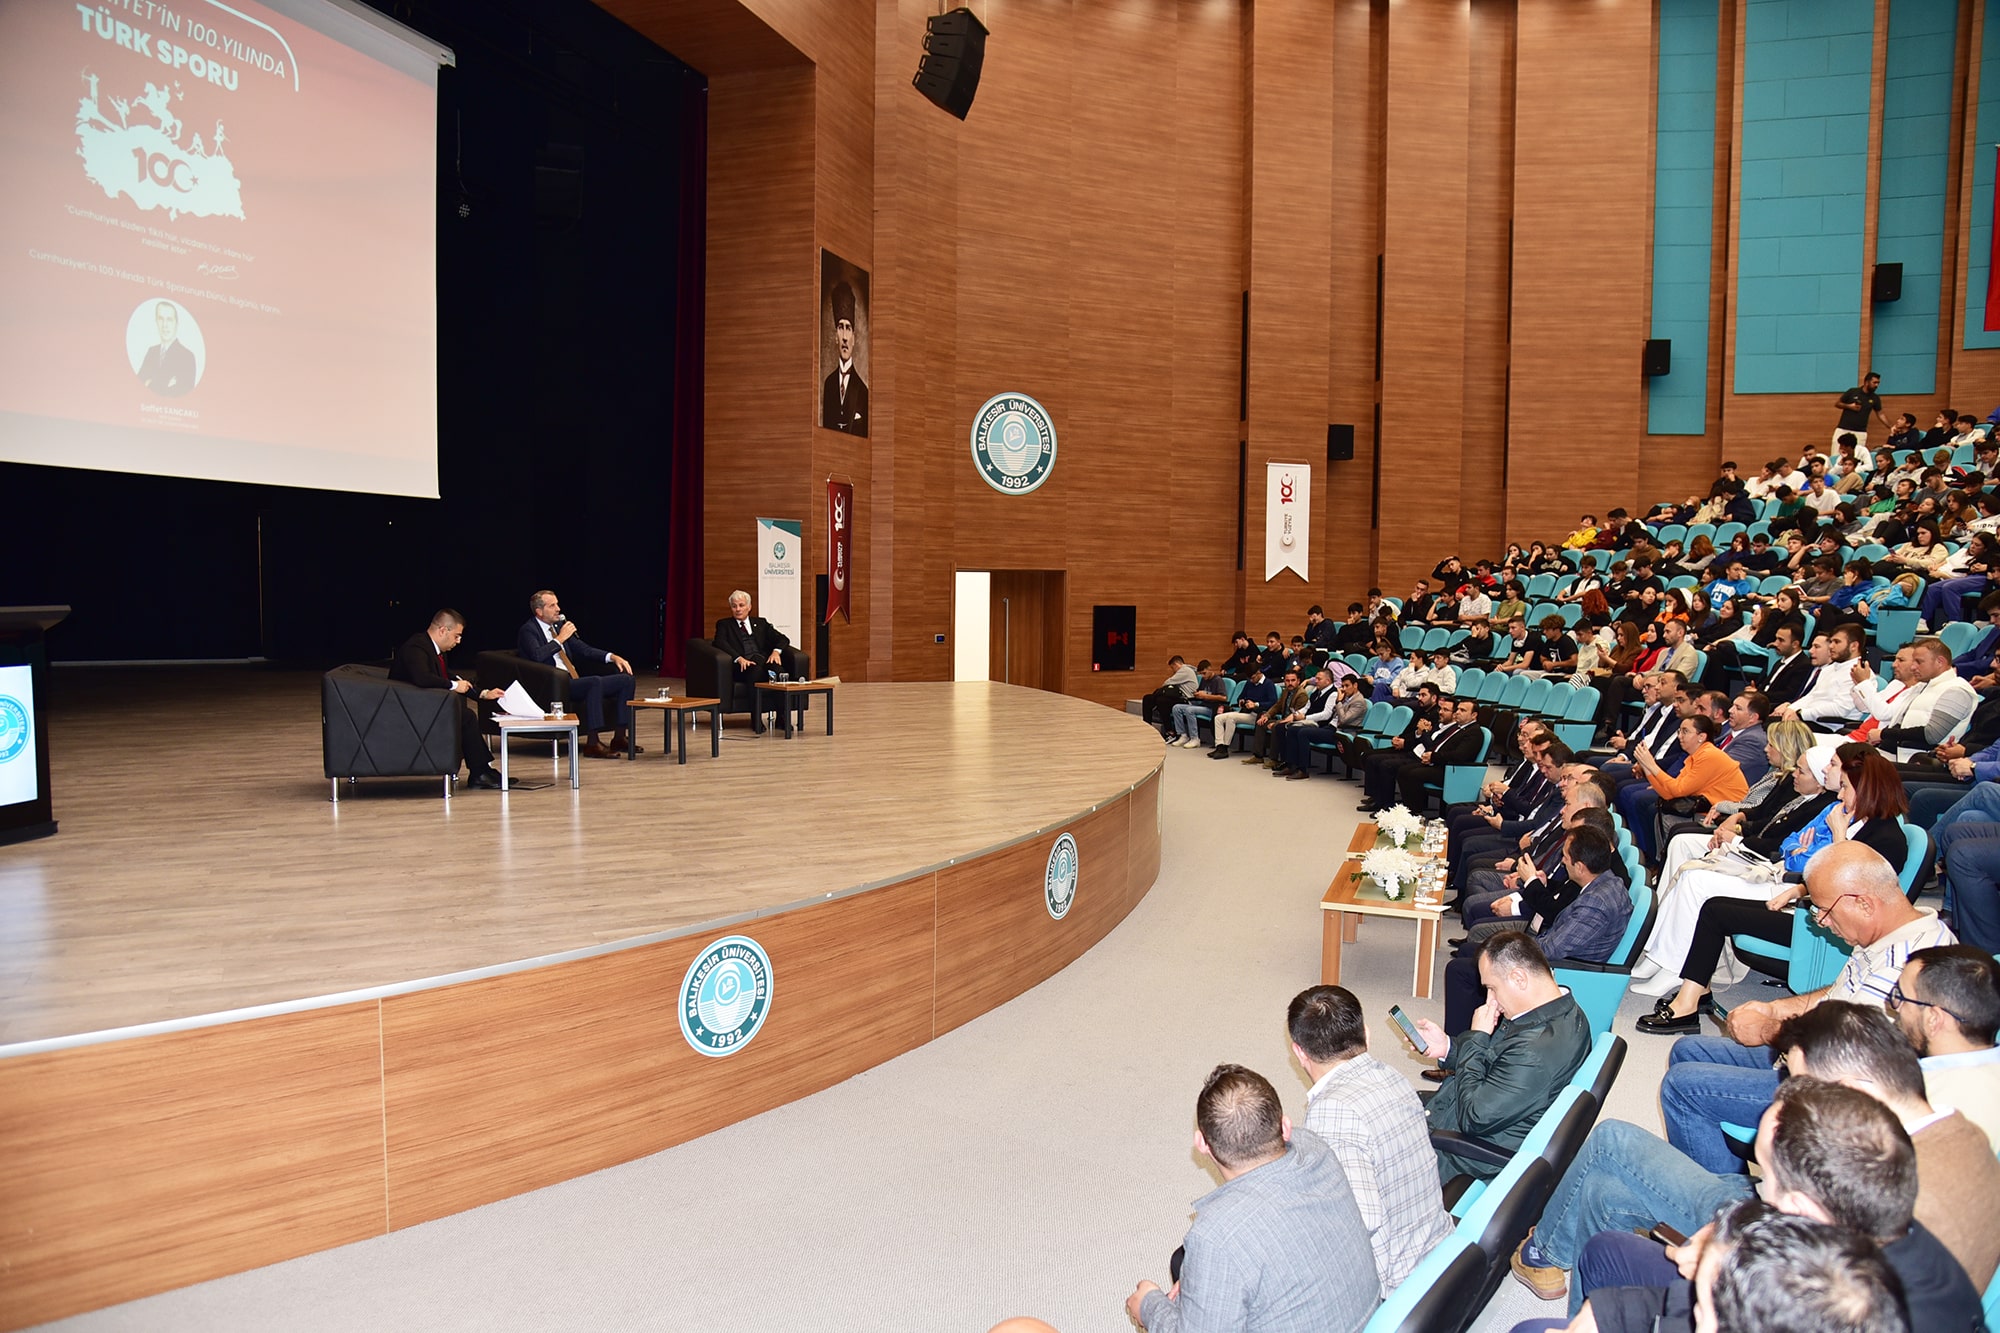 Balıkesir Üniversitesinde “Cumhuriyetin 100. Yılında Türk Sporu” konferansı düzenlendi